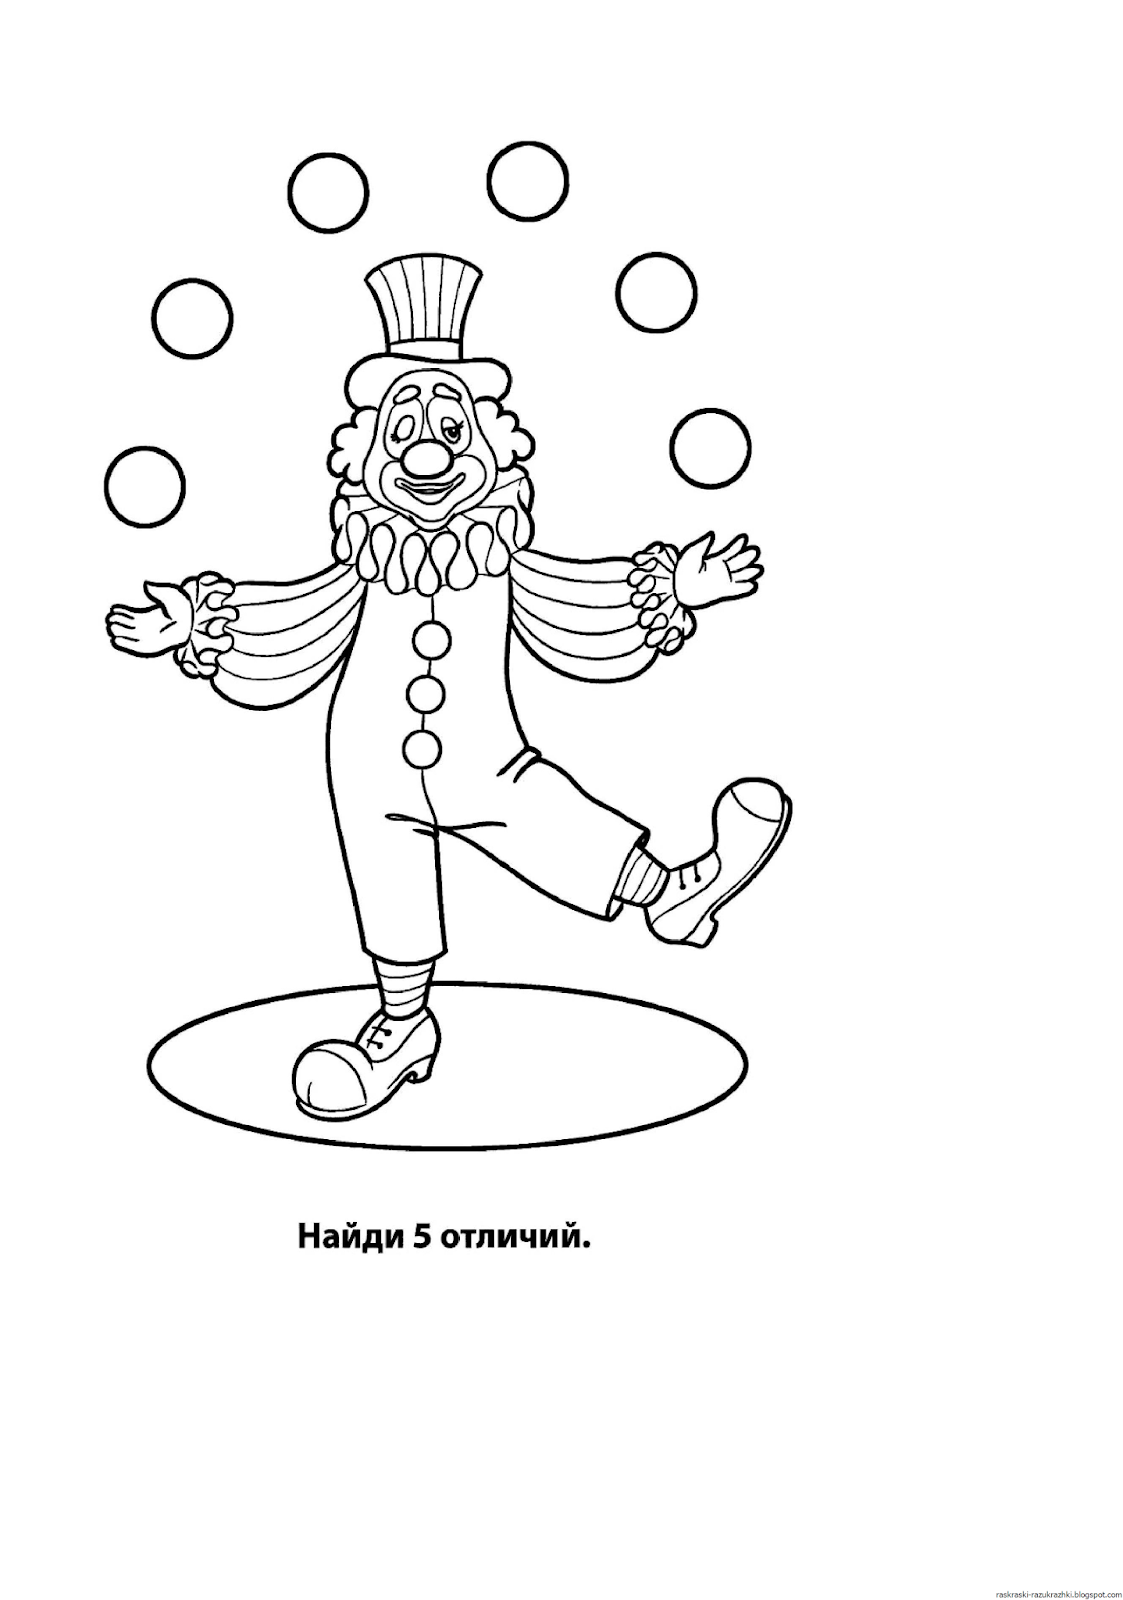 Пошаговая инструкция по рисованию страшного клоуна